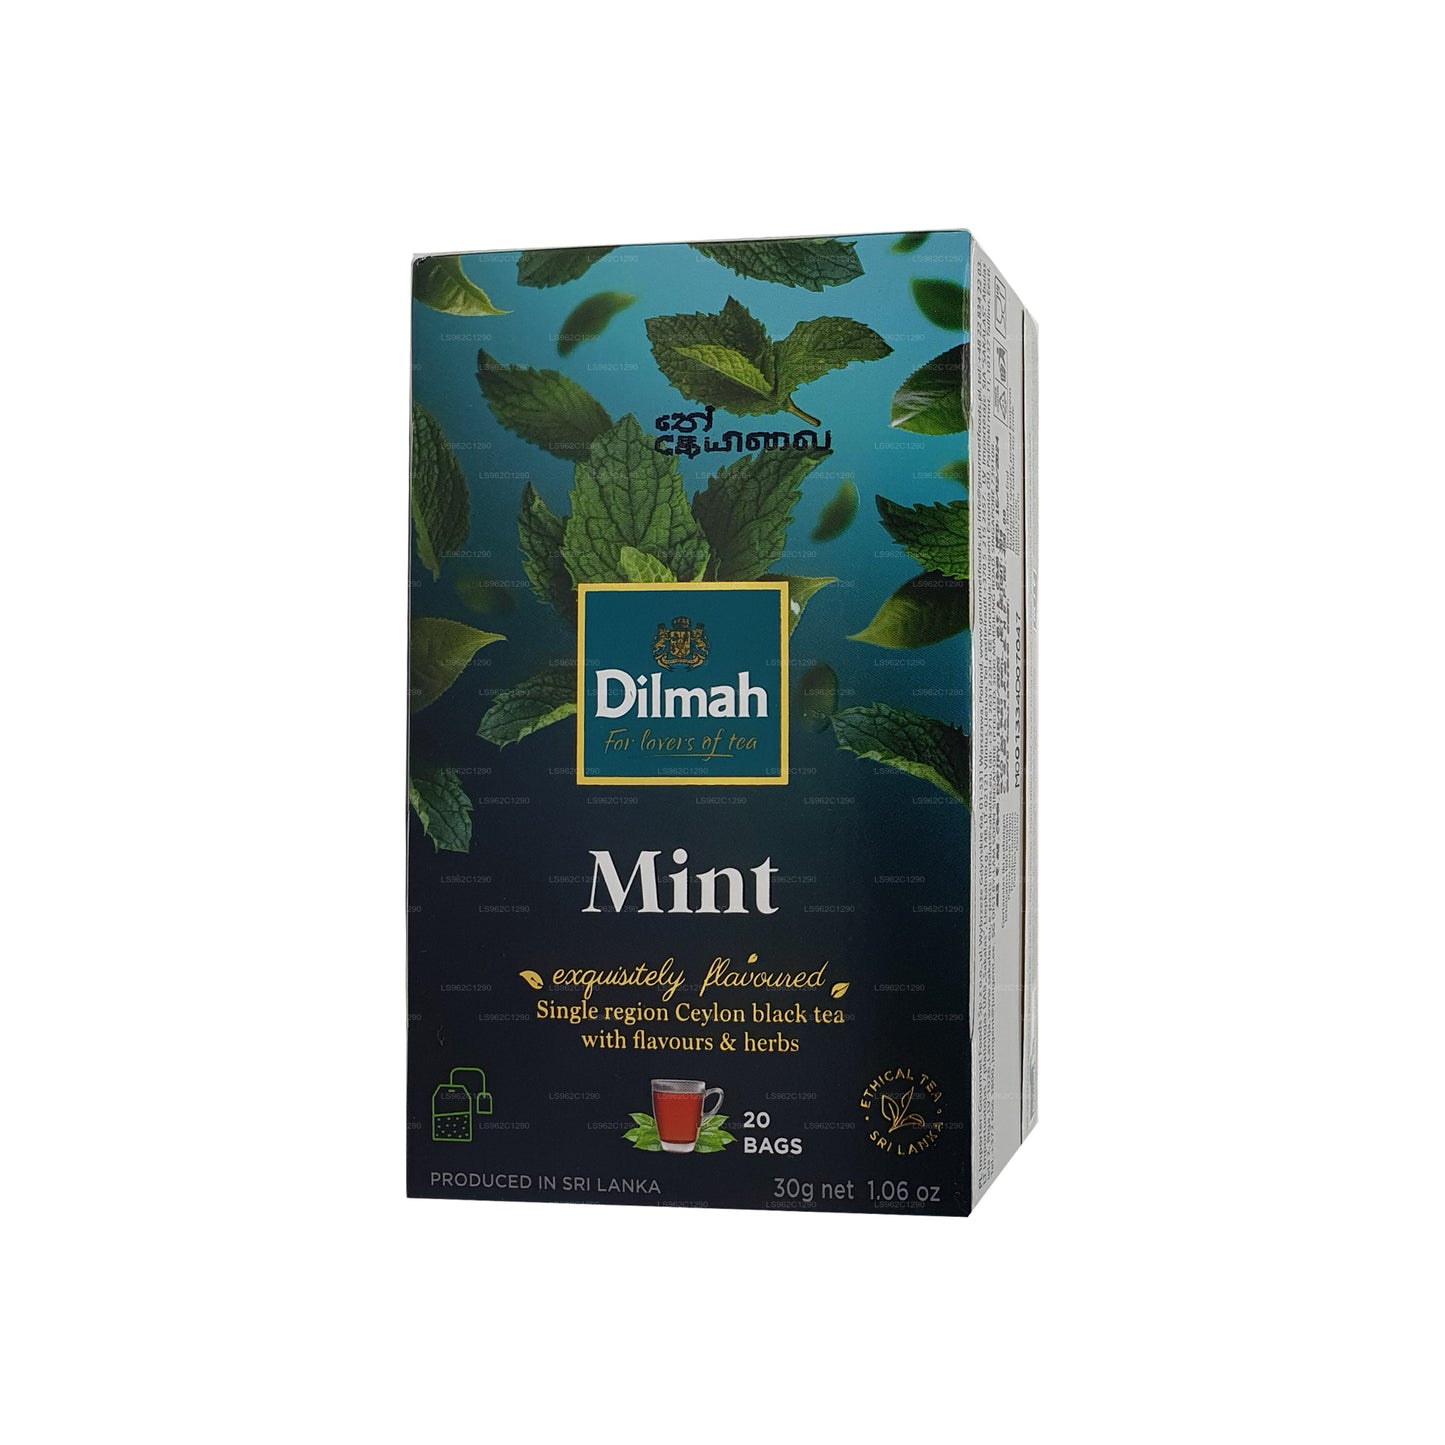 Dilmah ミントフレーバーセイロン紅茶 (30g)